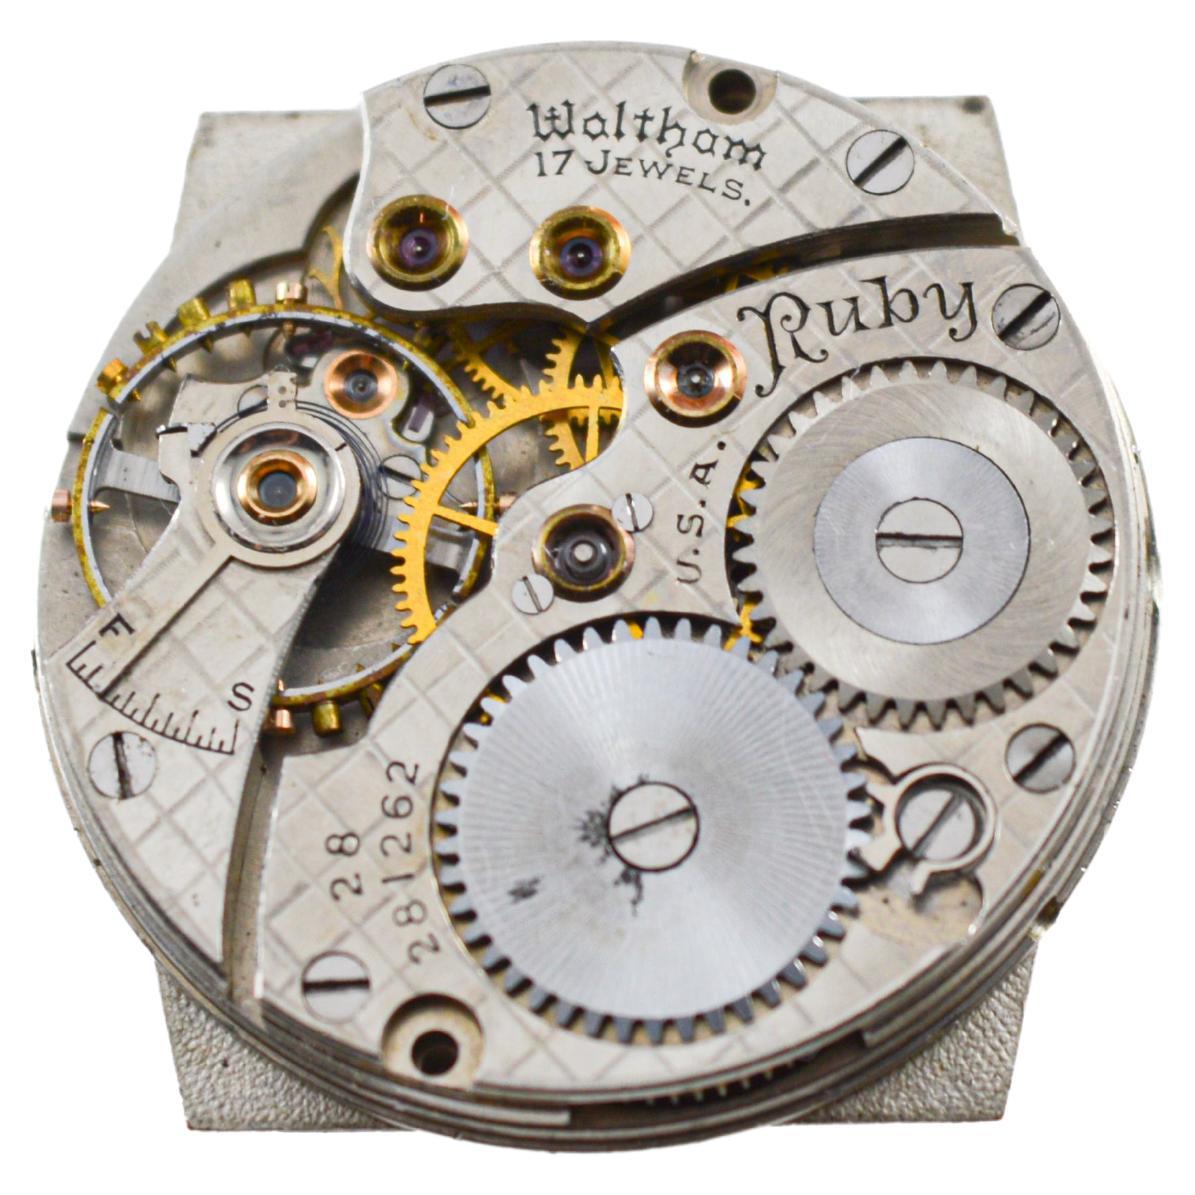 Waltham Yellow Gold Filled Art Deco Dual Time Watch with Original Dial and Strap (Montre à double fuseau horaire avec cadran et bracelet d'origine) 12